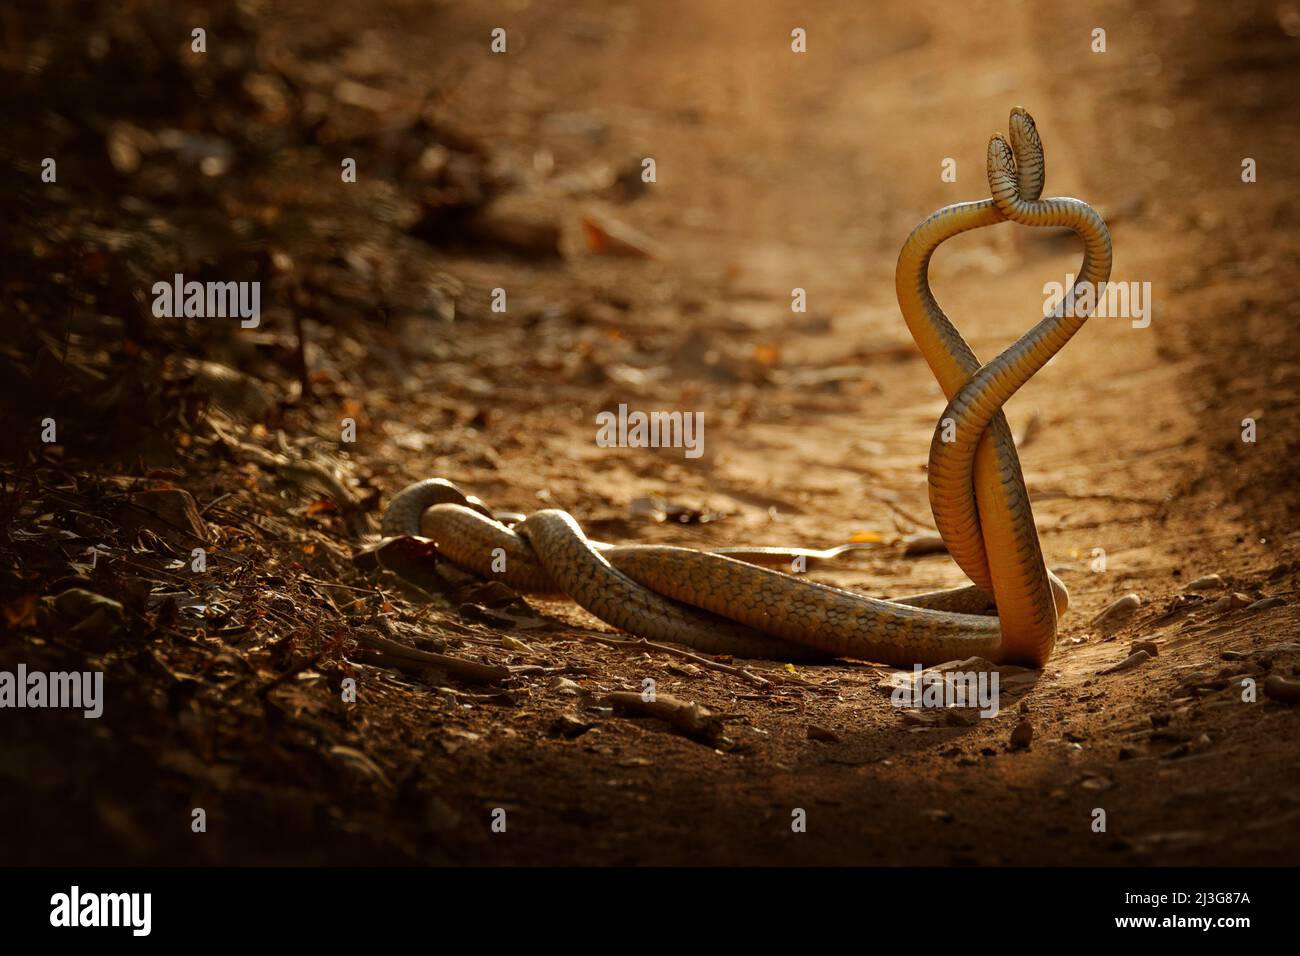 Lucha de serpientes. Serpiente de rata india, mucosa Ptyas. Dos serpientes indias no venenosas enredaron en la danza del amor en la polvorienta carretera del parque nacional de Ranthambore, India. Foto de stock